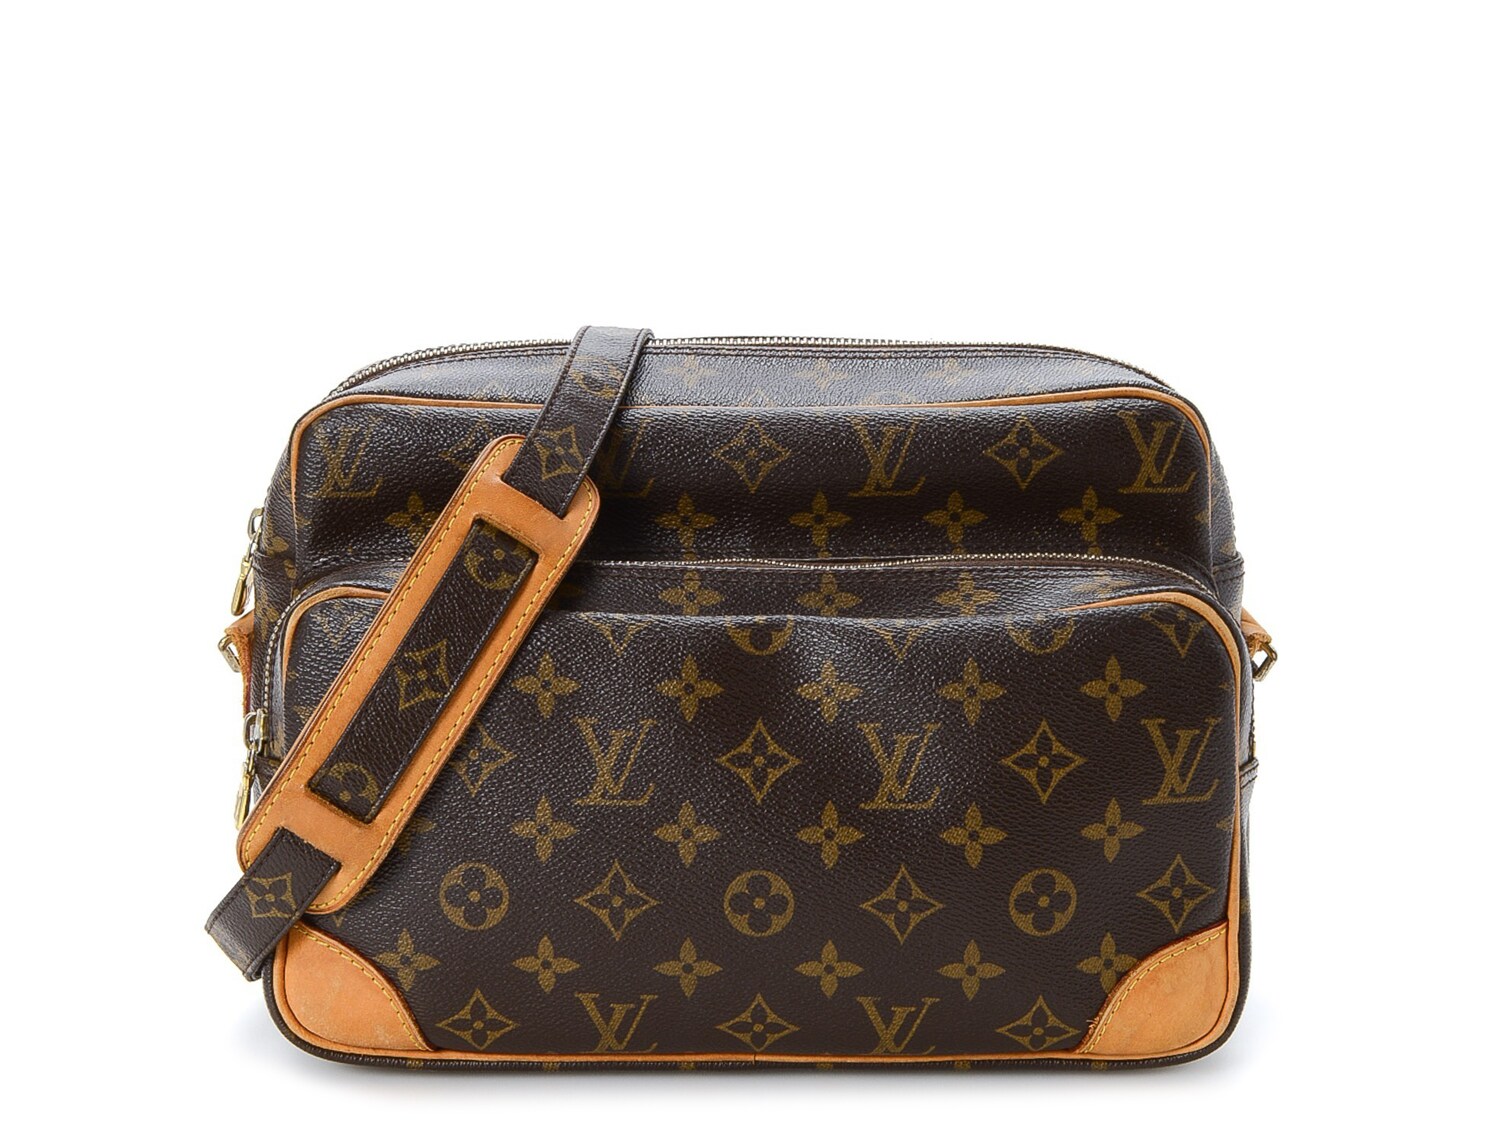 Unavailable Listing on   Vintage louis vuitton, Louis vuitton luggage,  Vintage handbags